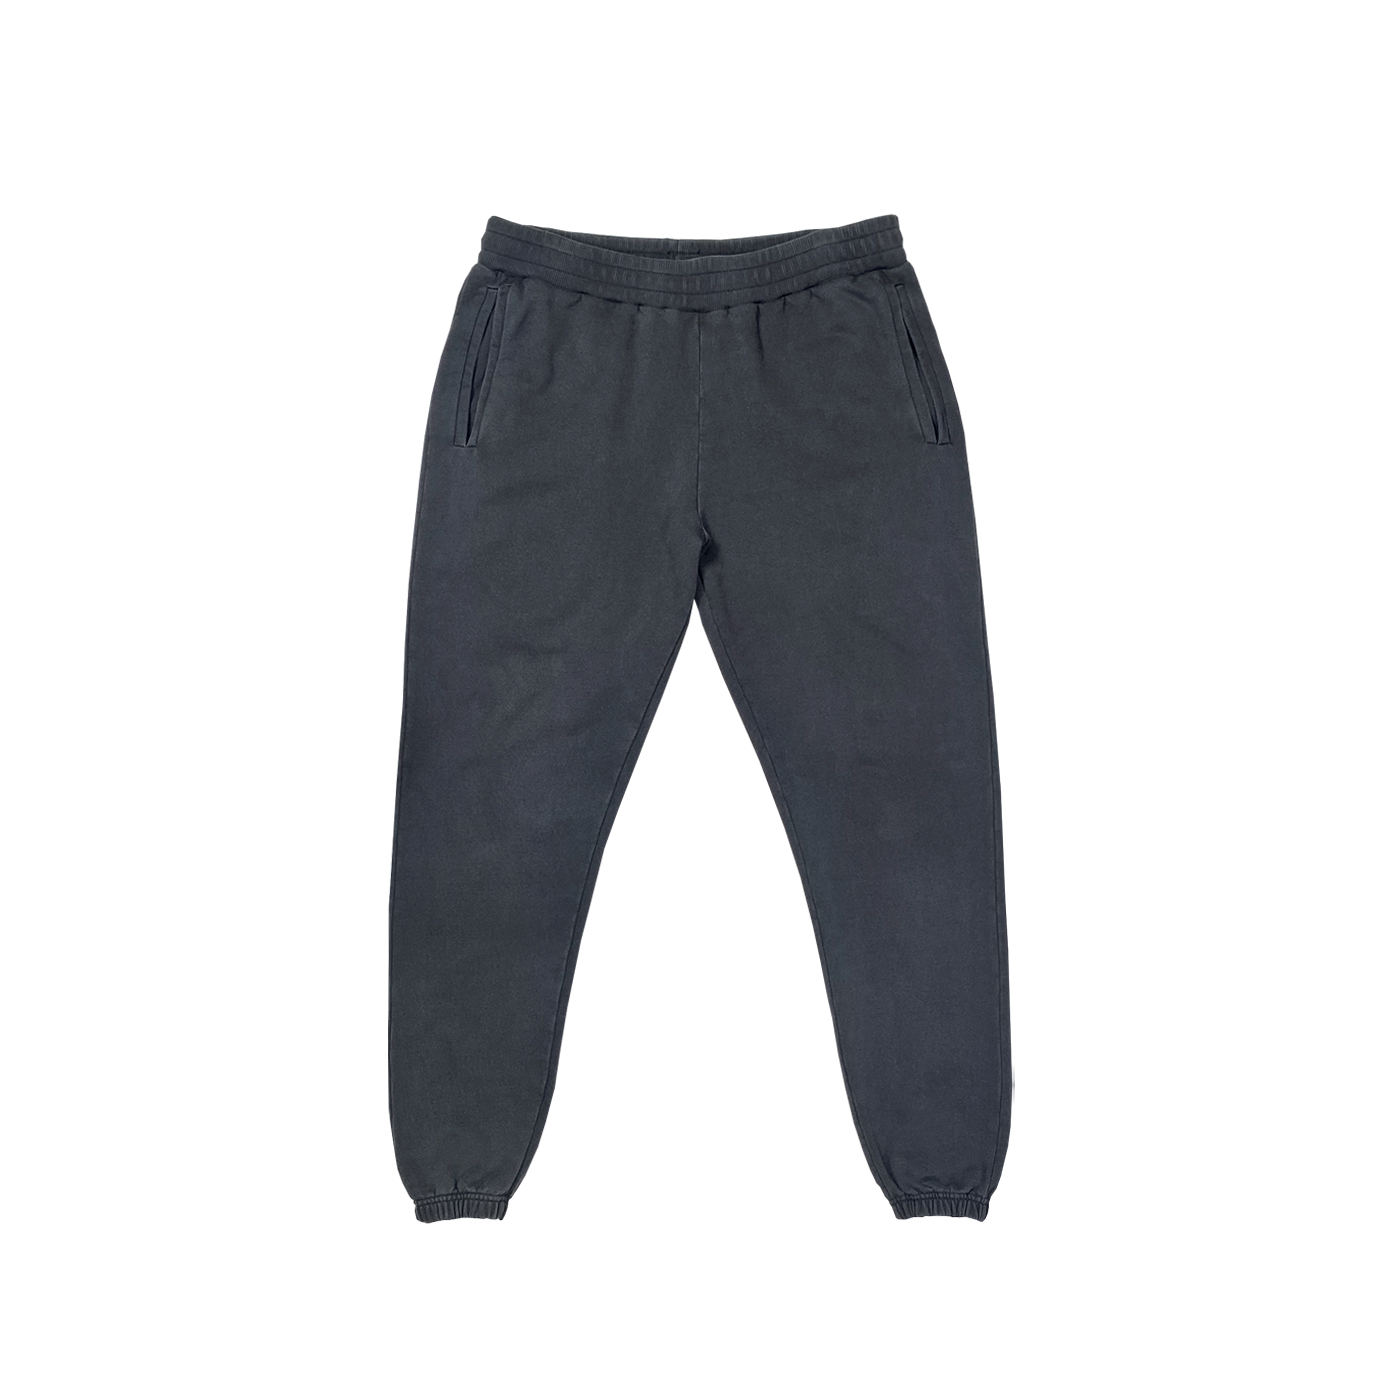 "Pantalon de survêtement noir avec taille élastiquée, idéal pour la relaxation et la personnalisation sur prynt.shop."